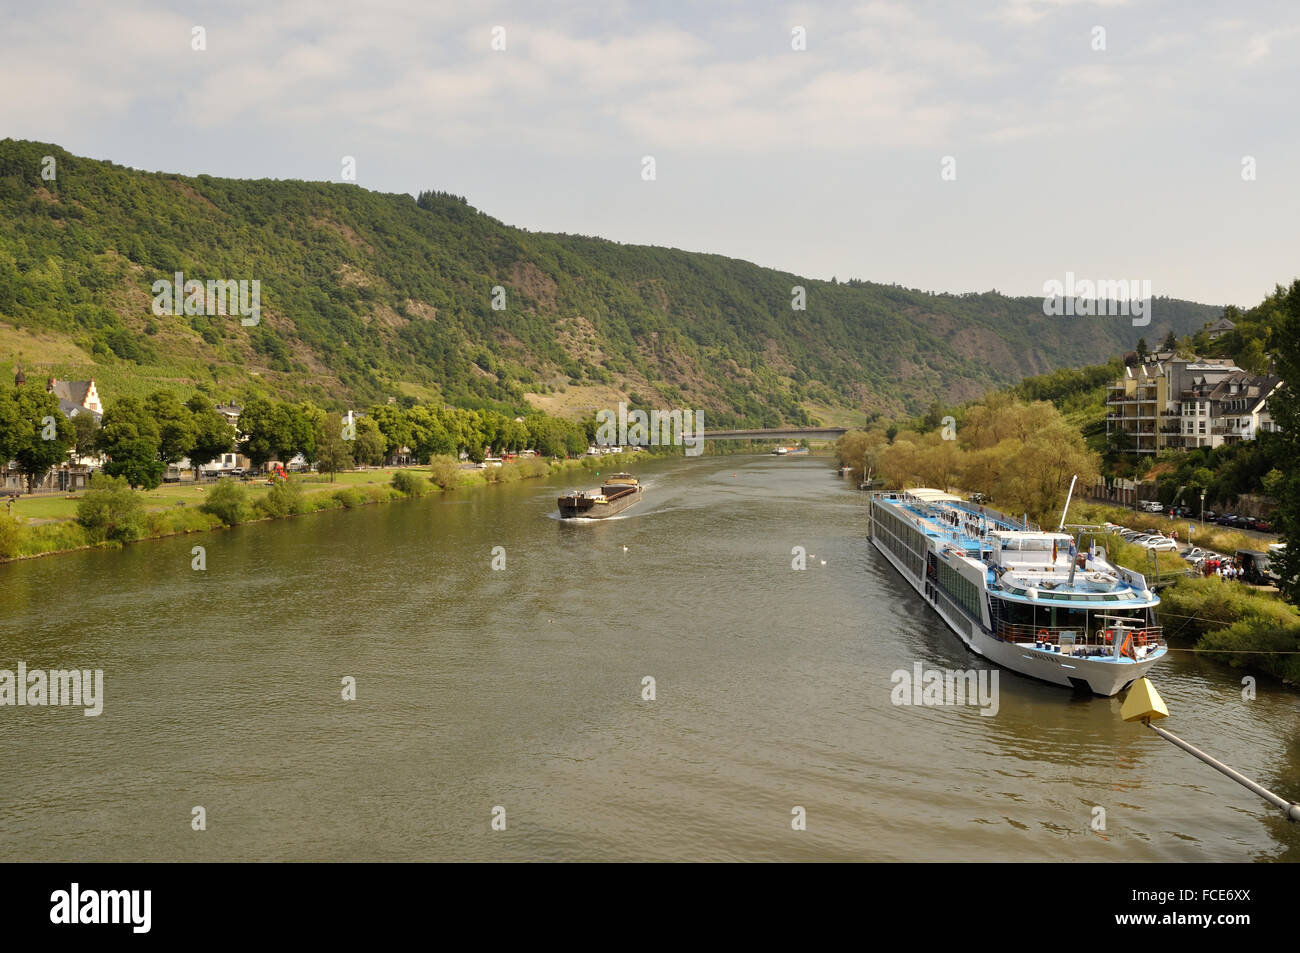 Registrato in Svizzera River Cruise Ship Amalyra è ormeggiato sul fiume Moselle a Cochem, Germania. Foto Stock